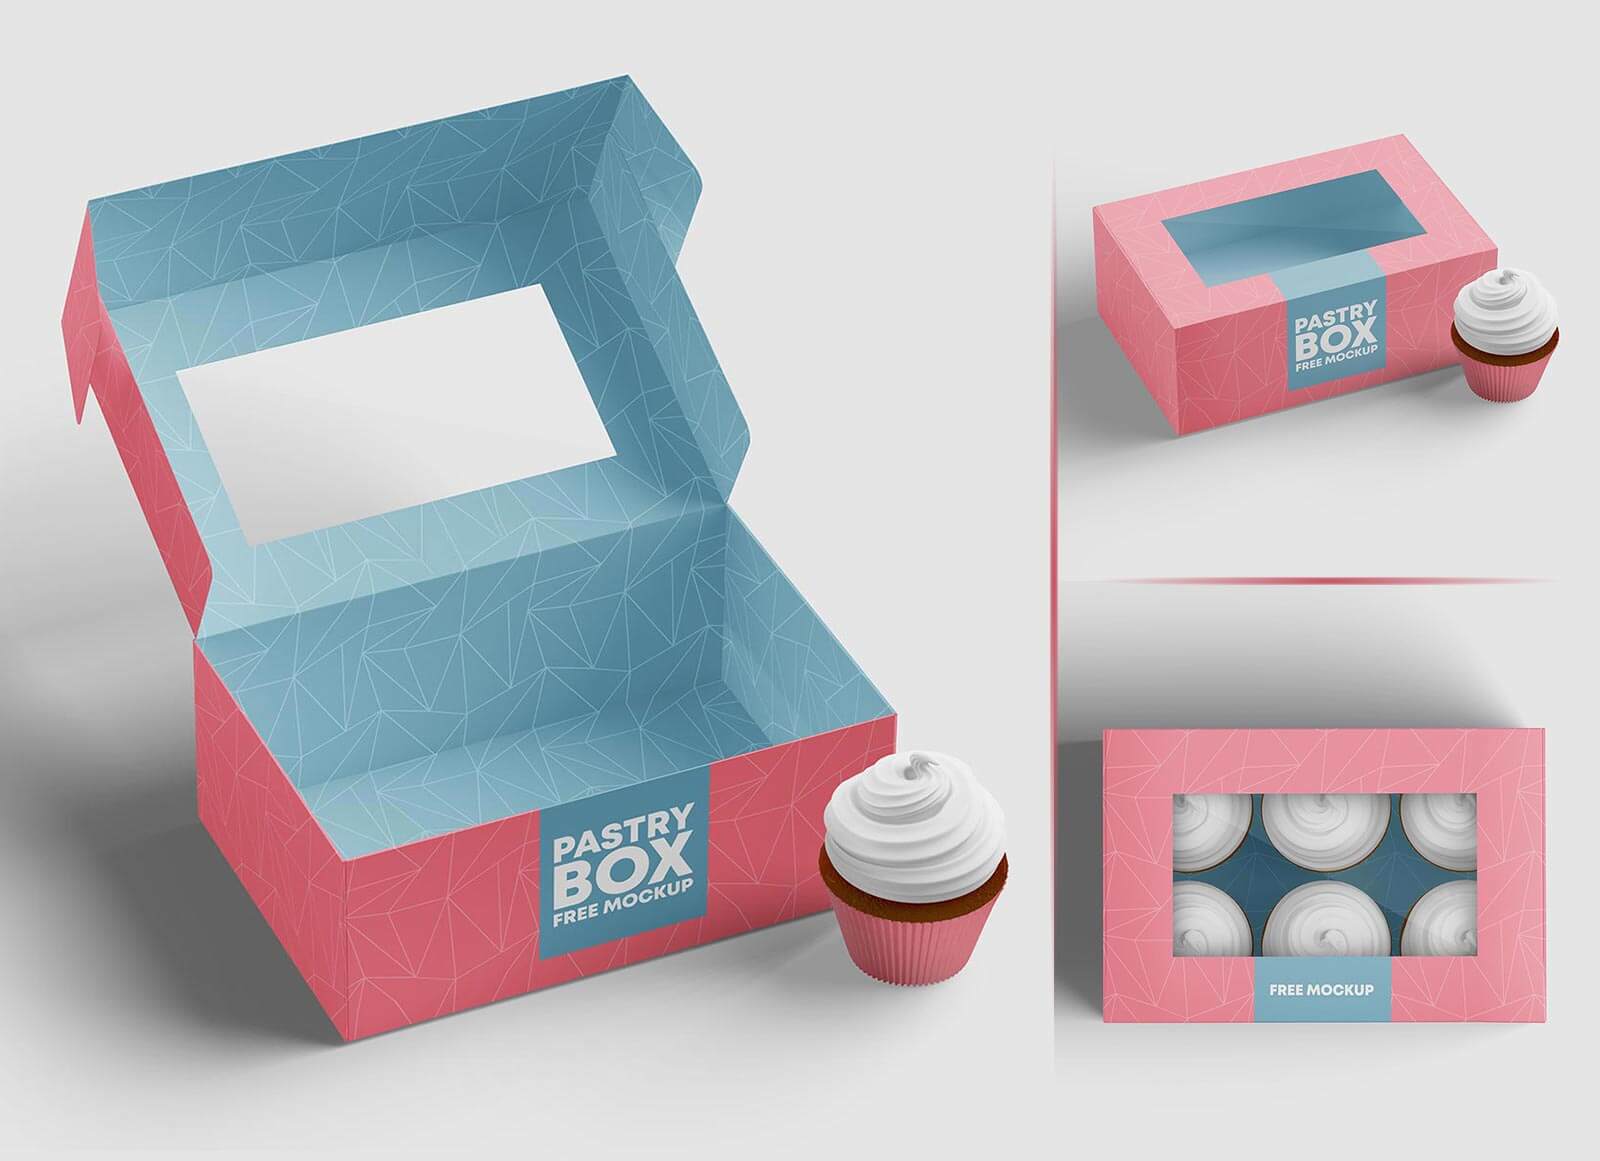 Cake Box Mockup - Free Vectors & PSDs to Download